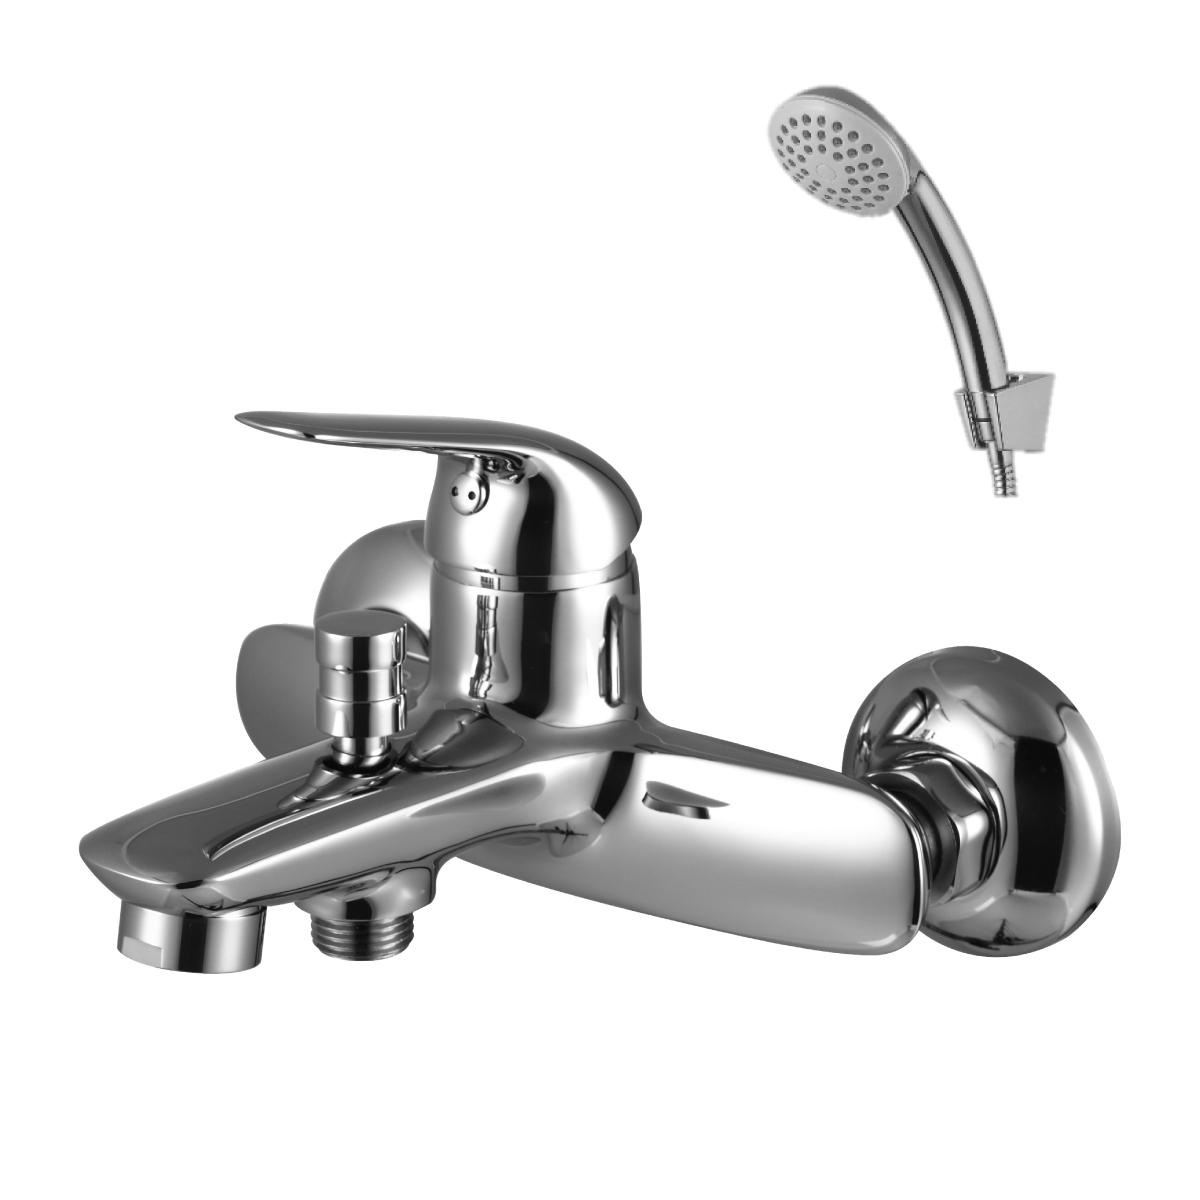 LM2102C Bath faucet with non-swivel spout